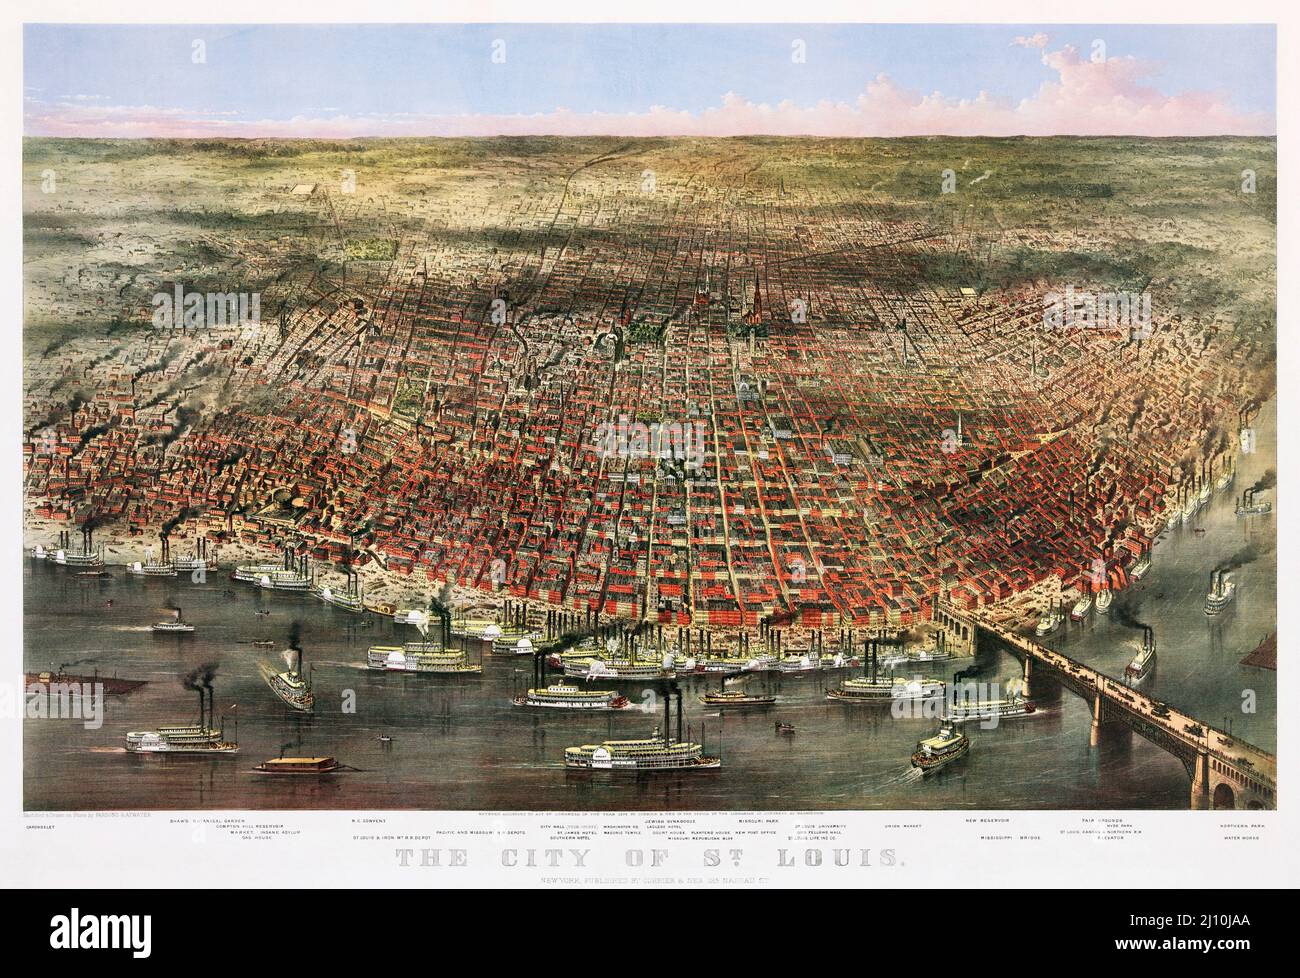 La città di St. Louis, Missouri, Stati Uniti d'America. Un panorama aereo della città pubblicato da Currier & Ives nel 1874. Il cromolithograph è stato fatto nel periodo di massimo splendore dei battelli a vapore del fiume Mississippi che si possono vedere nella foto. Foto Stock